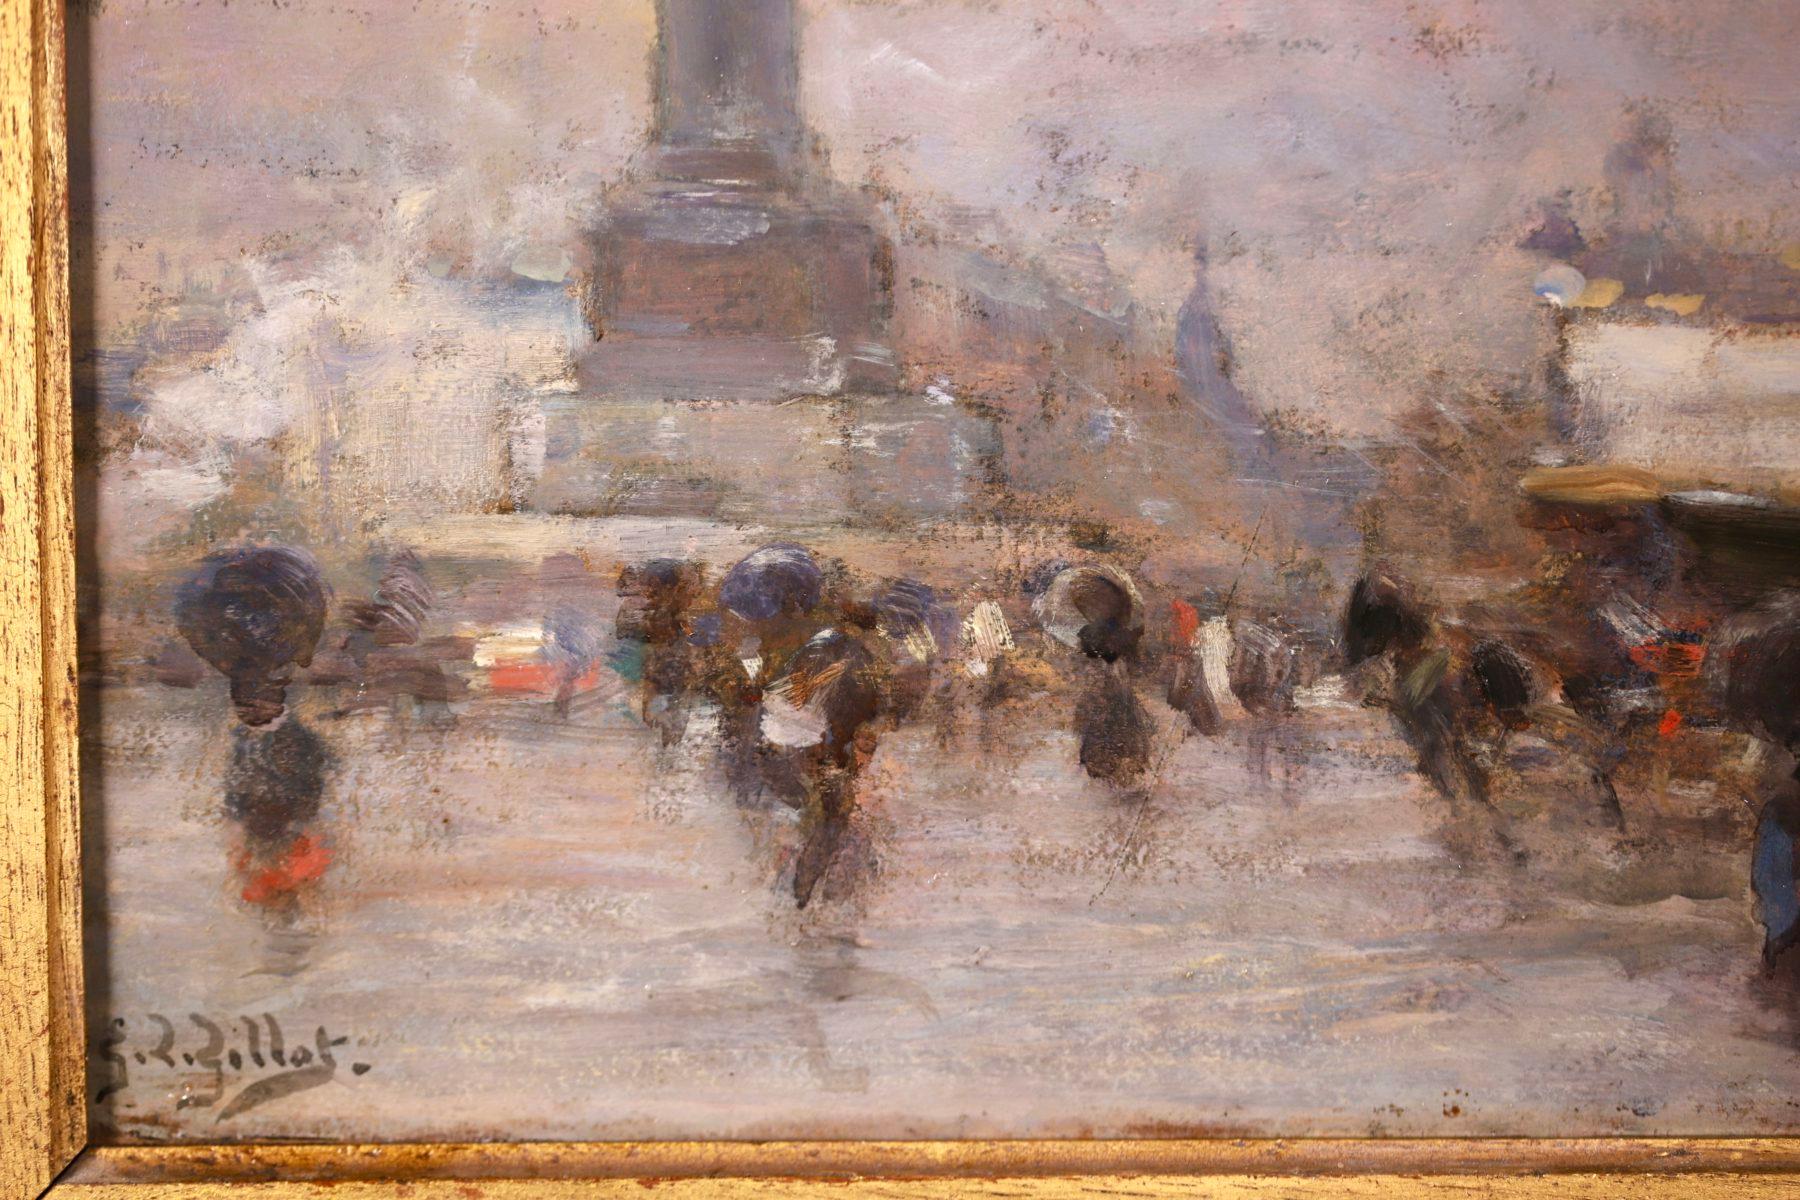 Rain - Paris - Impressionist Figurative Cityscape Oil by Eugene Louis Gillot - Beige Landscape Painting by Eugène Louis Gillot